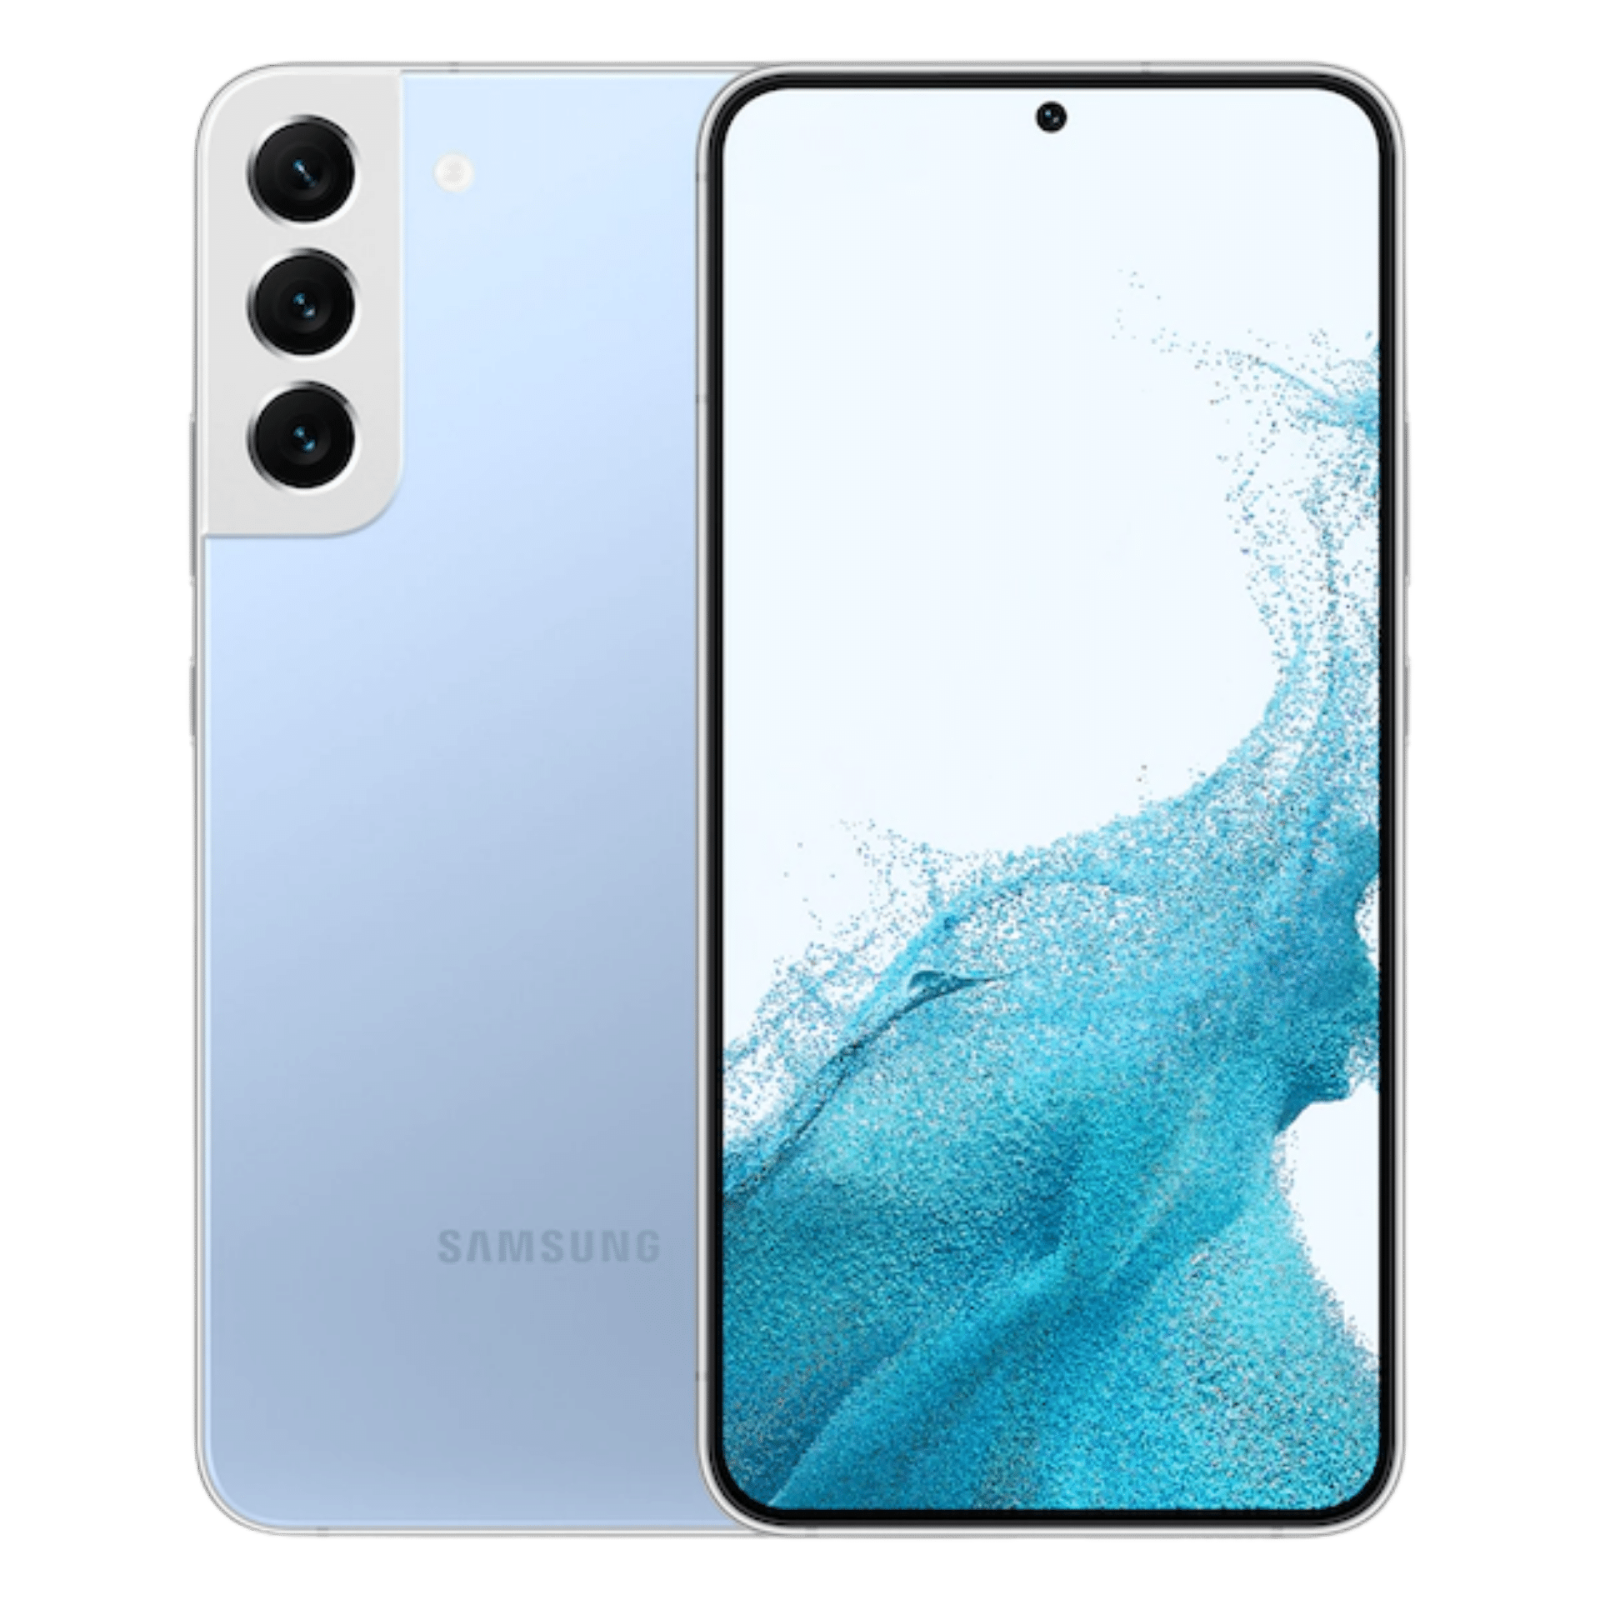 Samsung Galaxy S22 Sky Blue Color